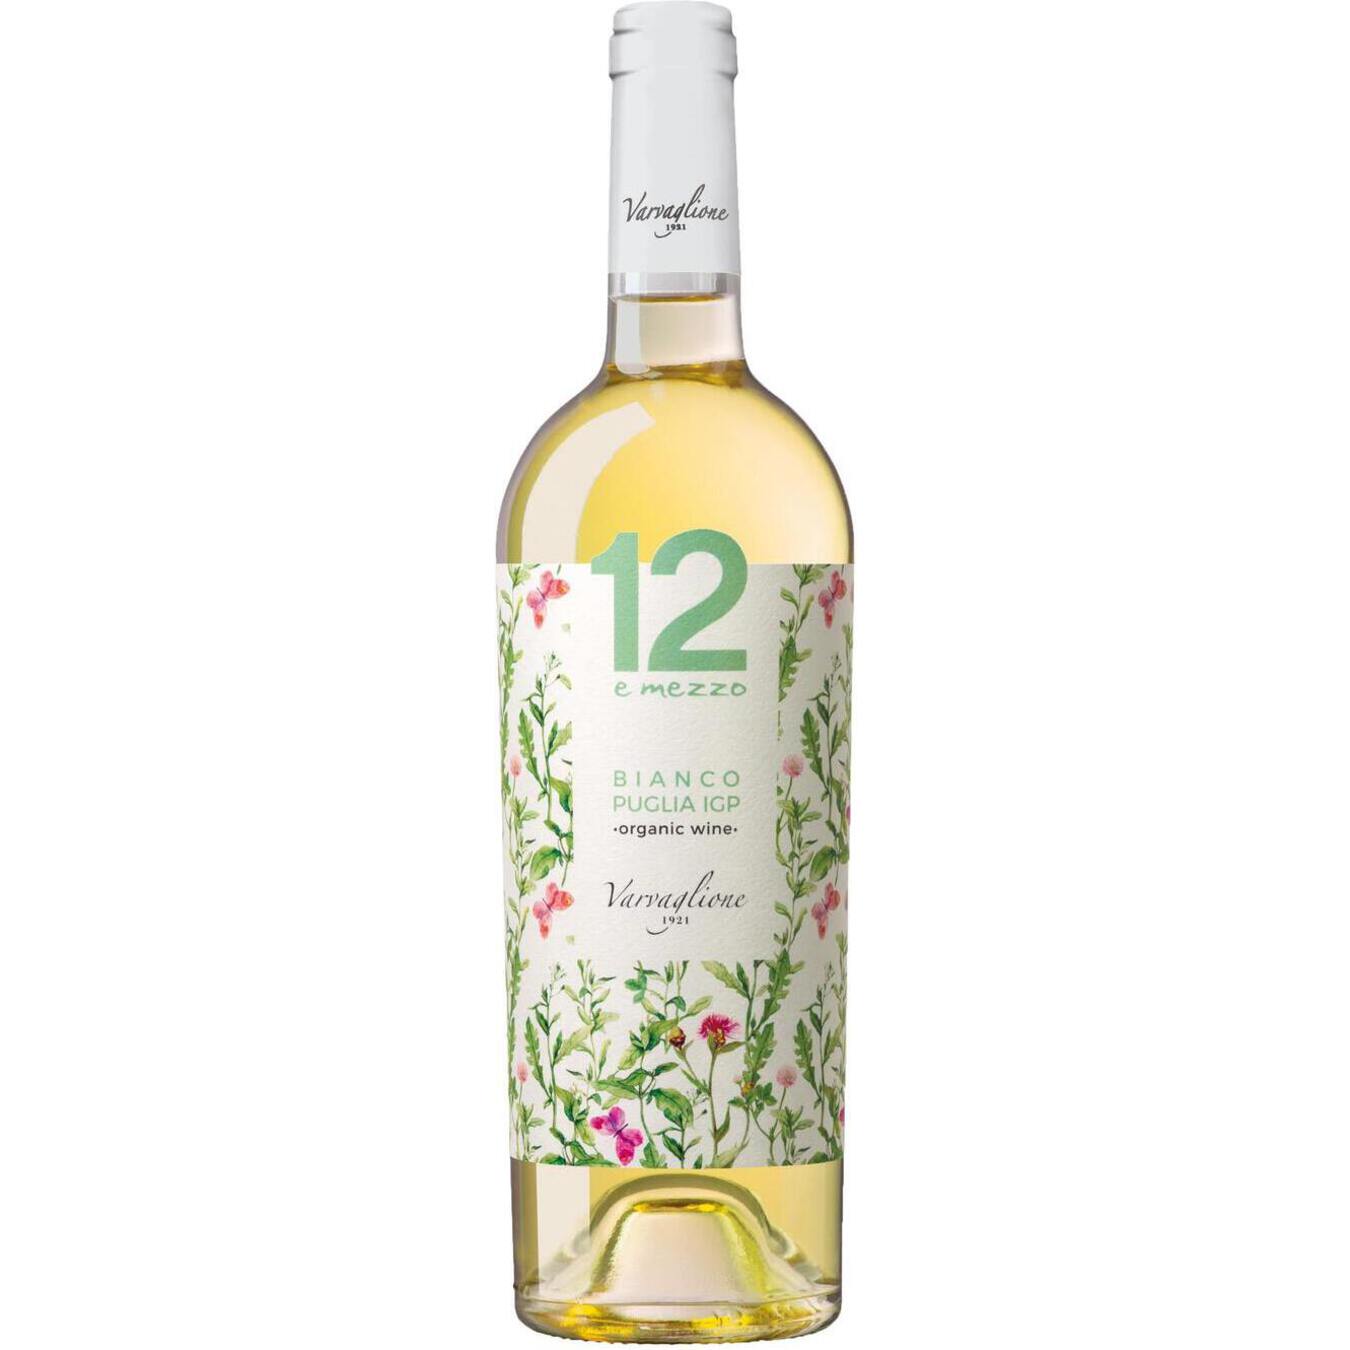 12 E Mezzo Biologico Bianco Puglia IGP white semi-dry wine 12,5% 0,75l